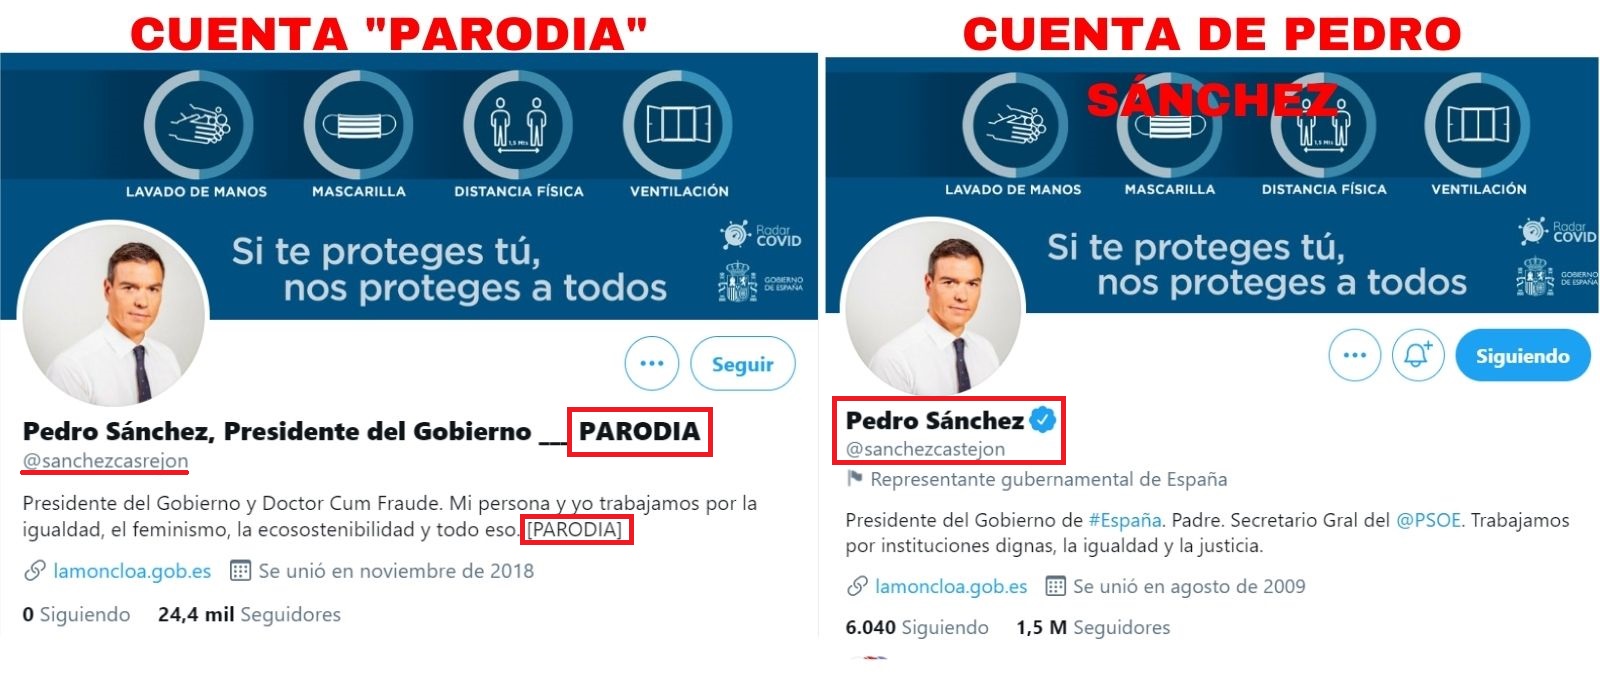 Captura de las cuentas de Twitter parodia y la de Pedro Sánchez.